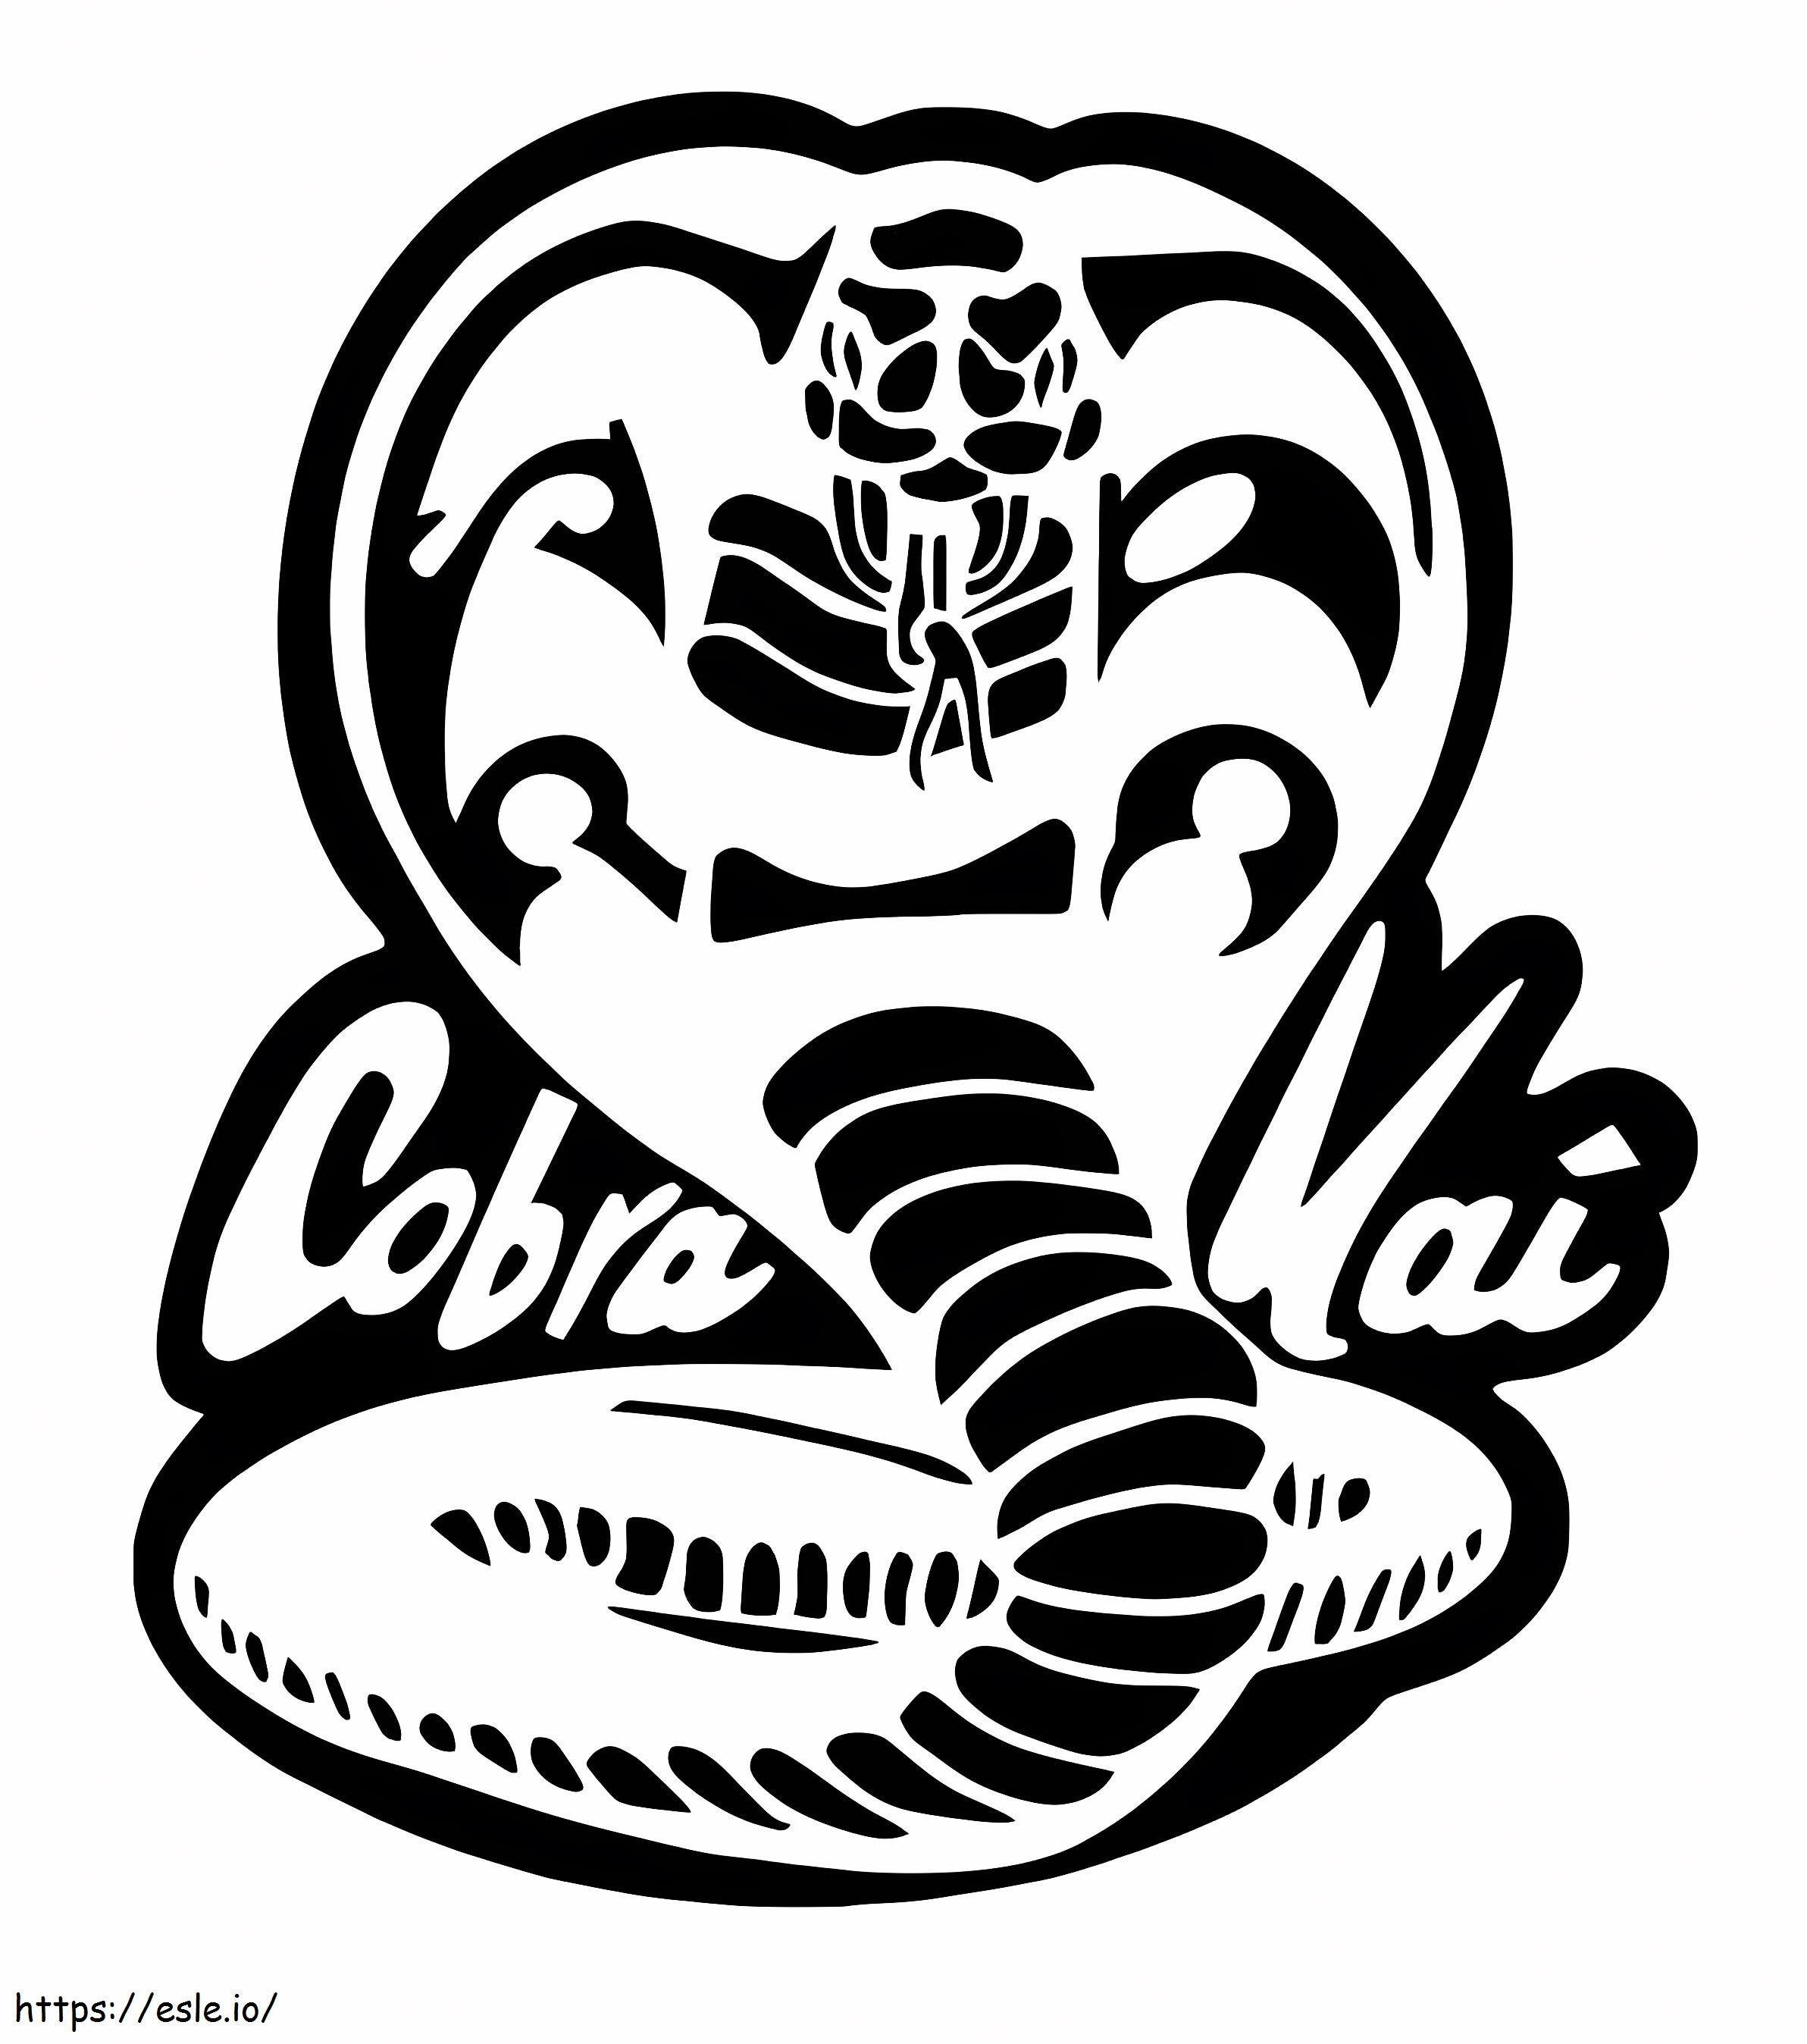 Logotipo de Cobra Kai para colorear